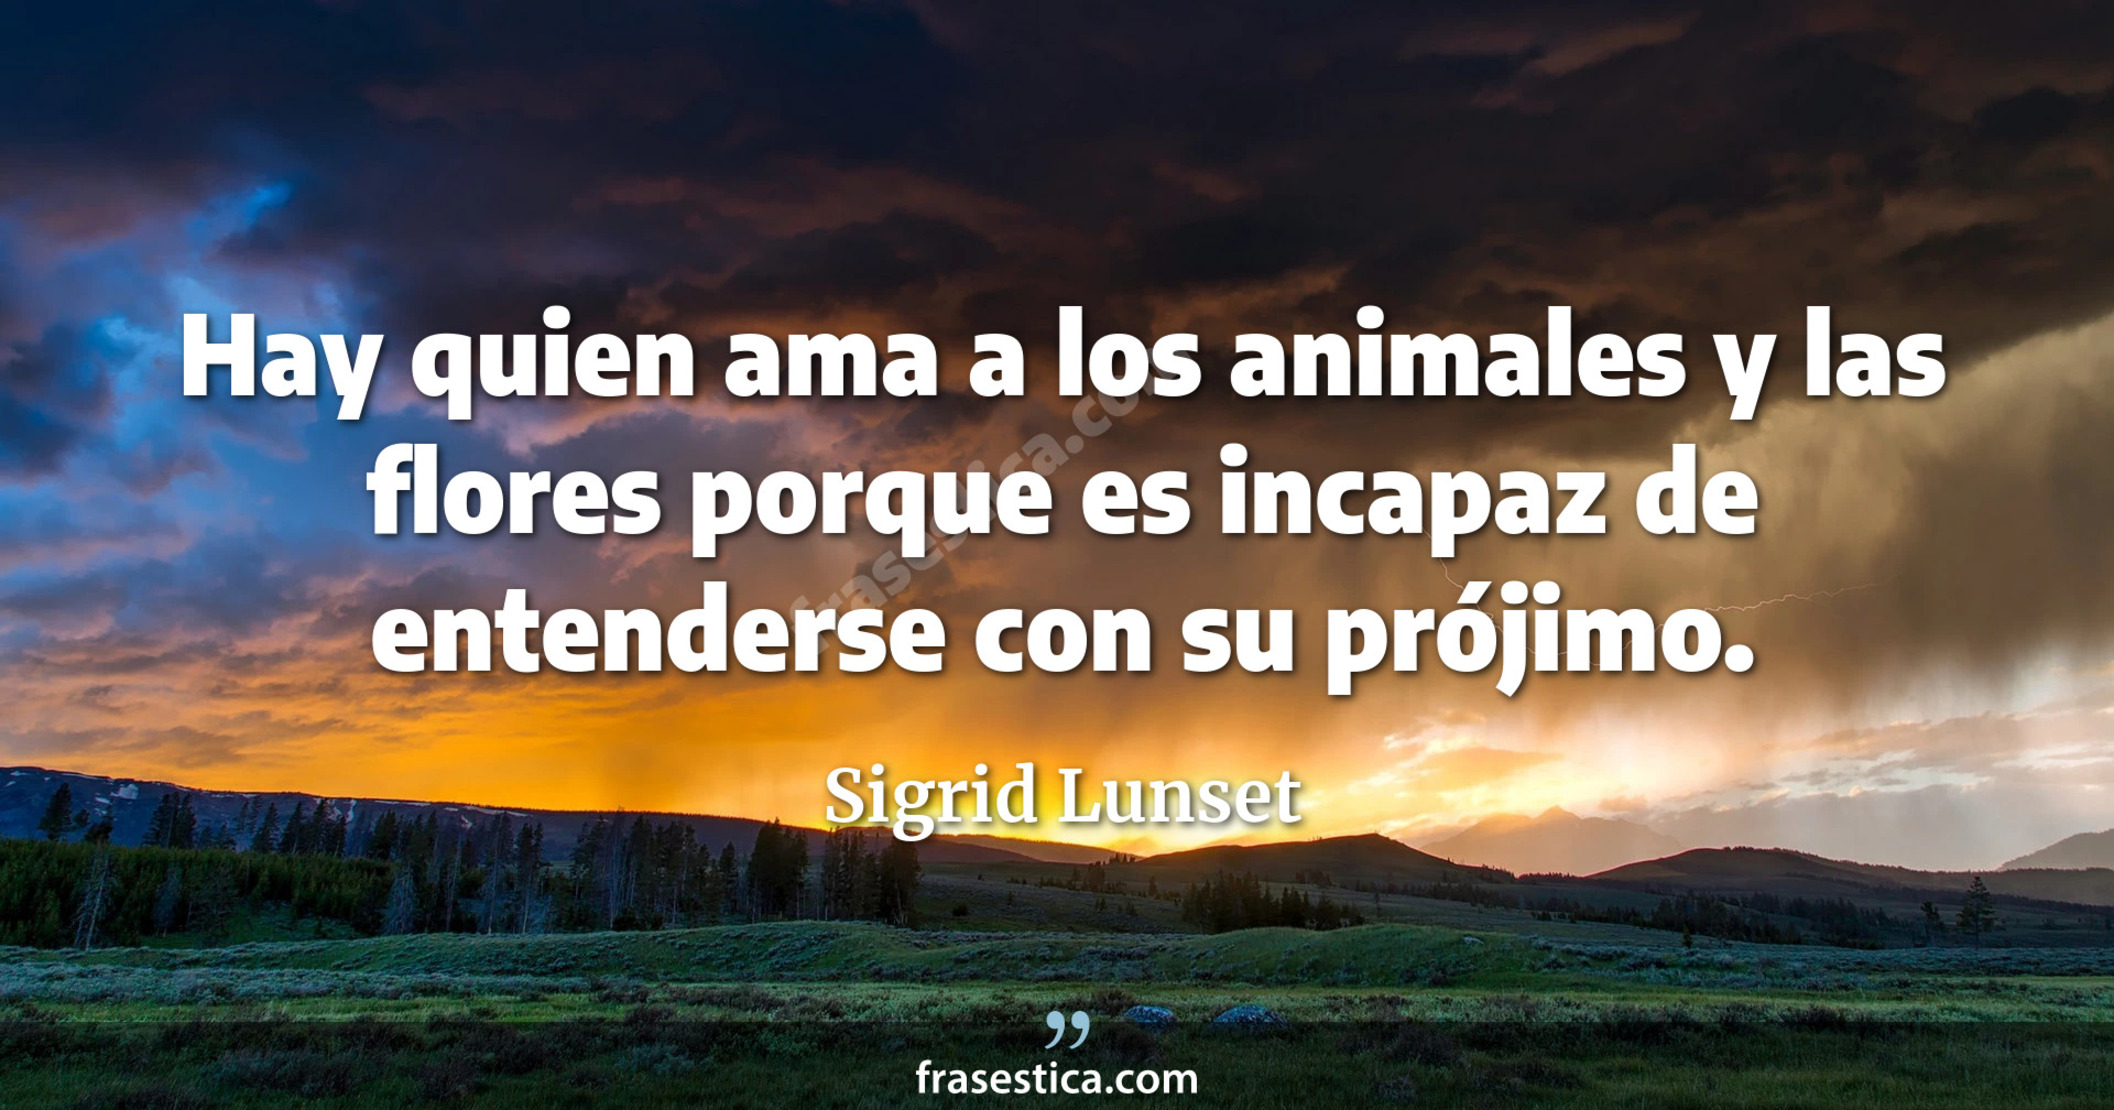 Hay quien ama a los animales y las flores porque es incapaz de entenderse con su prójimo. - Sigrid Lunset